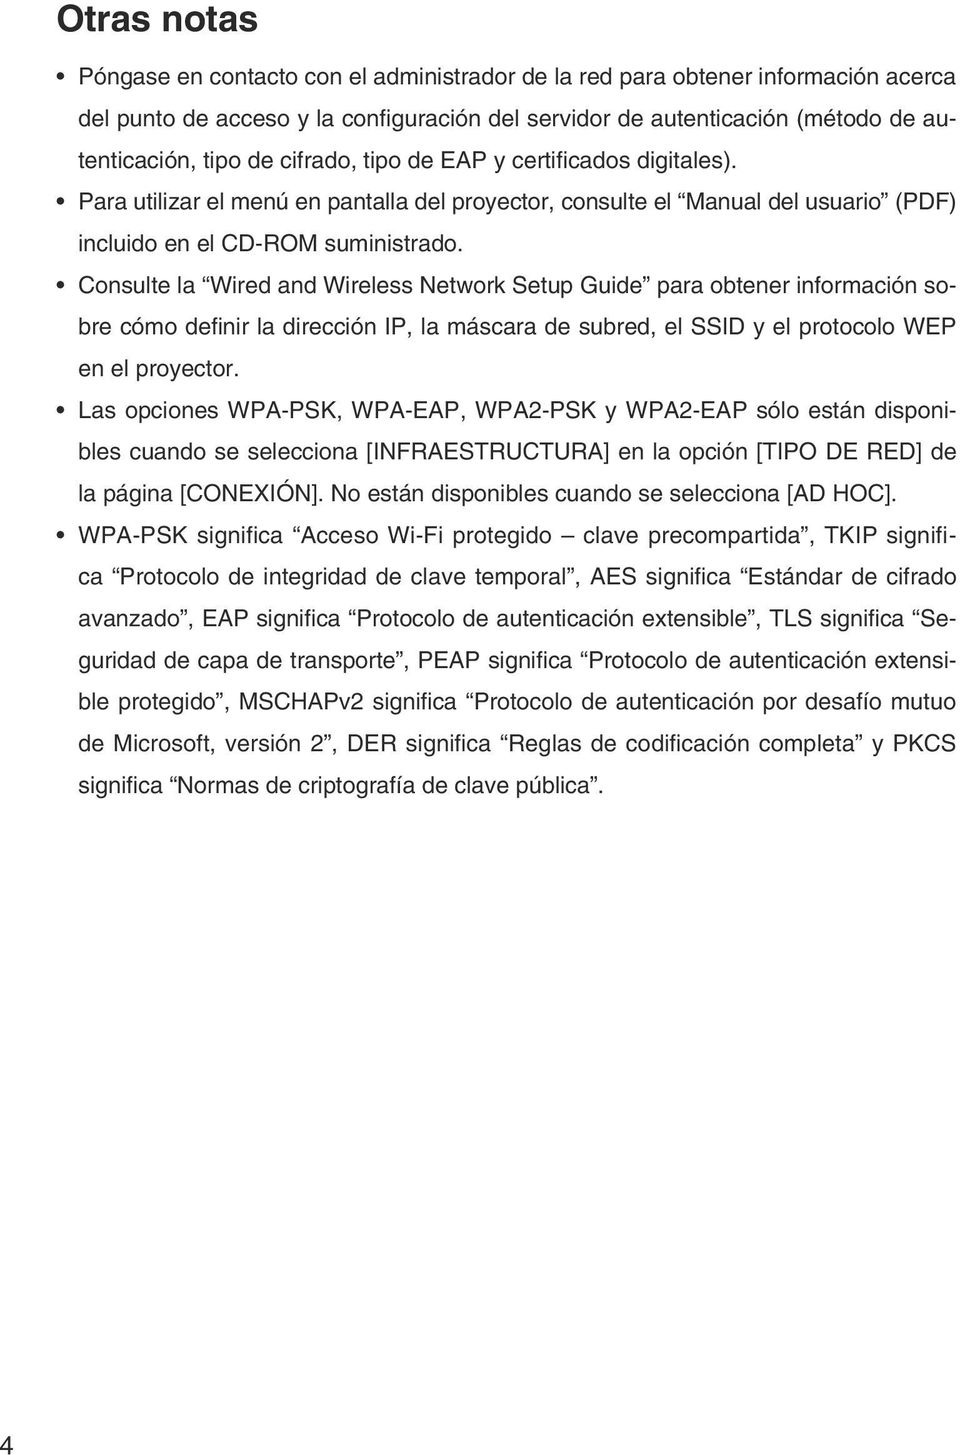 Consulte la Wired and Wireless Network Setup Guide para obtener información sobre cómo definir la dirección IP, la máscara de subred, el SSID y el protocolo WEP en el proyector.